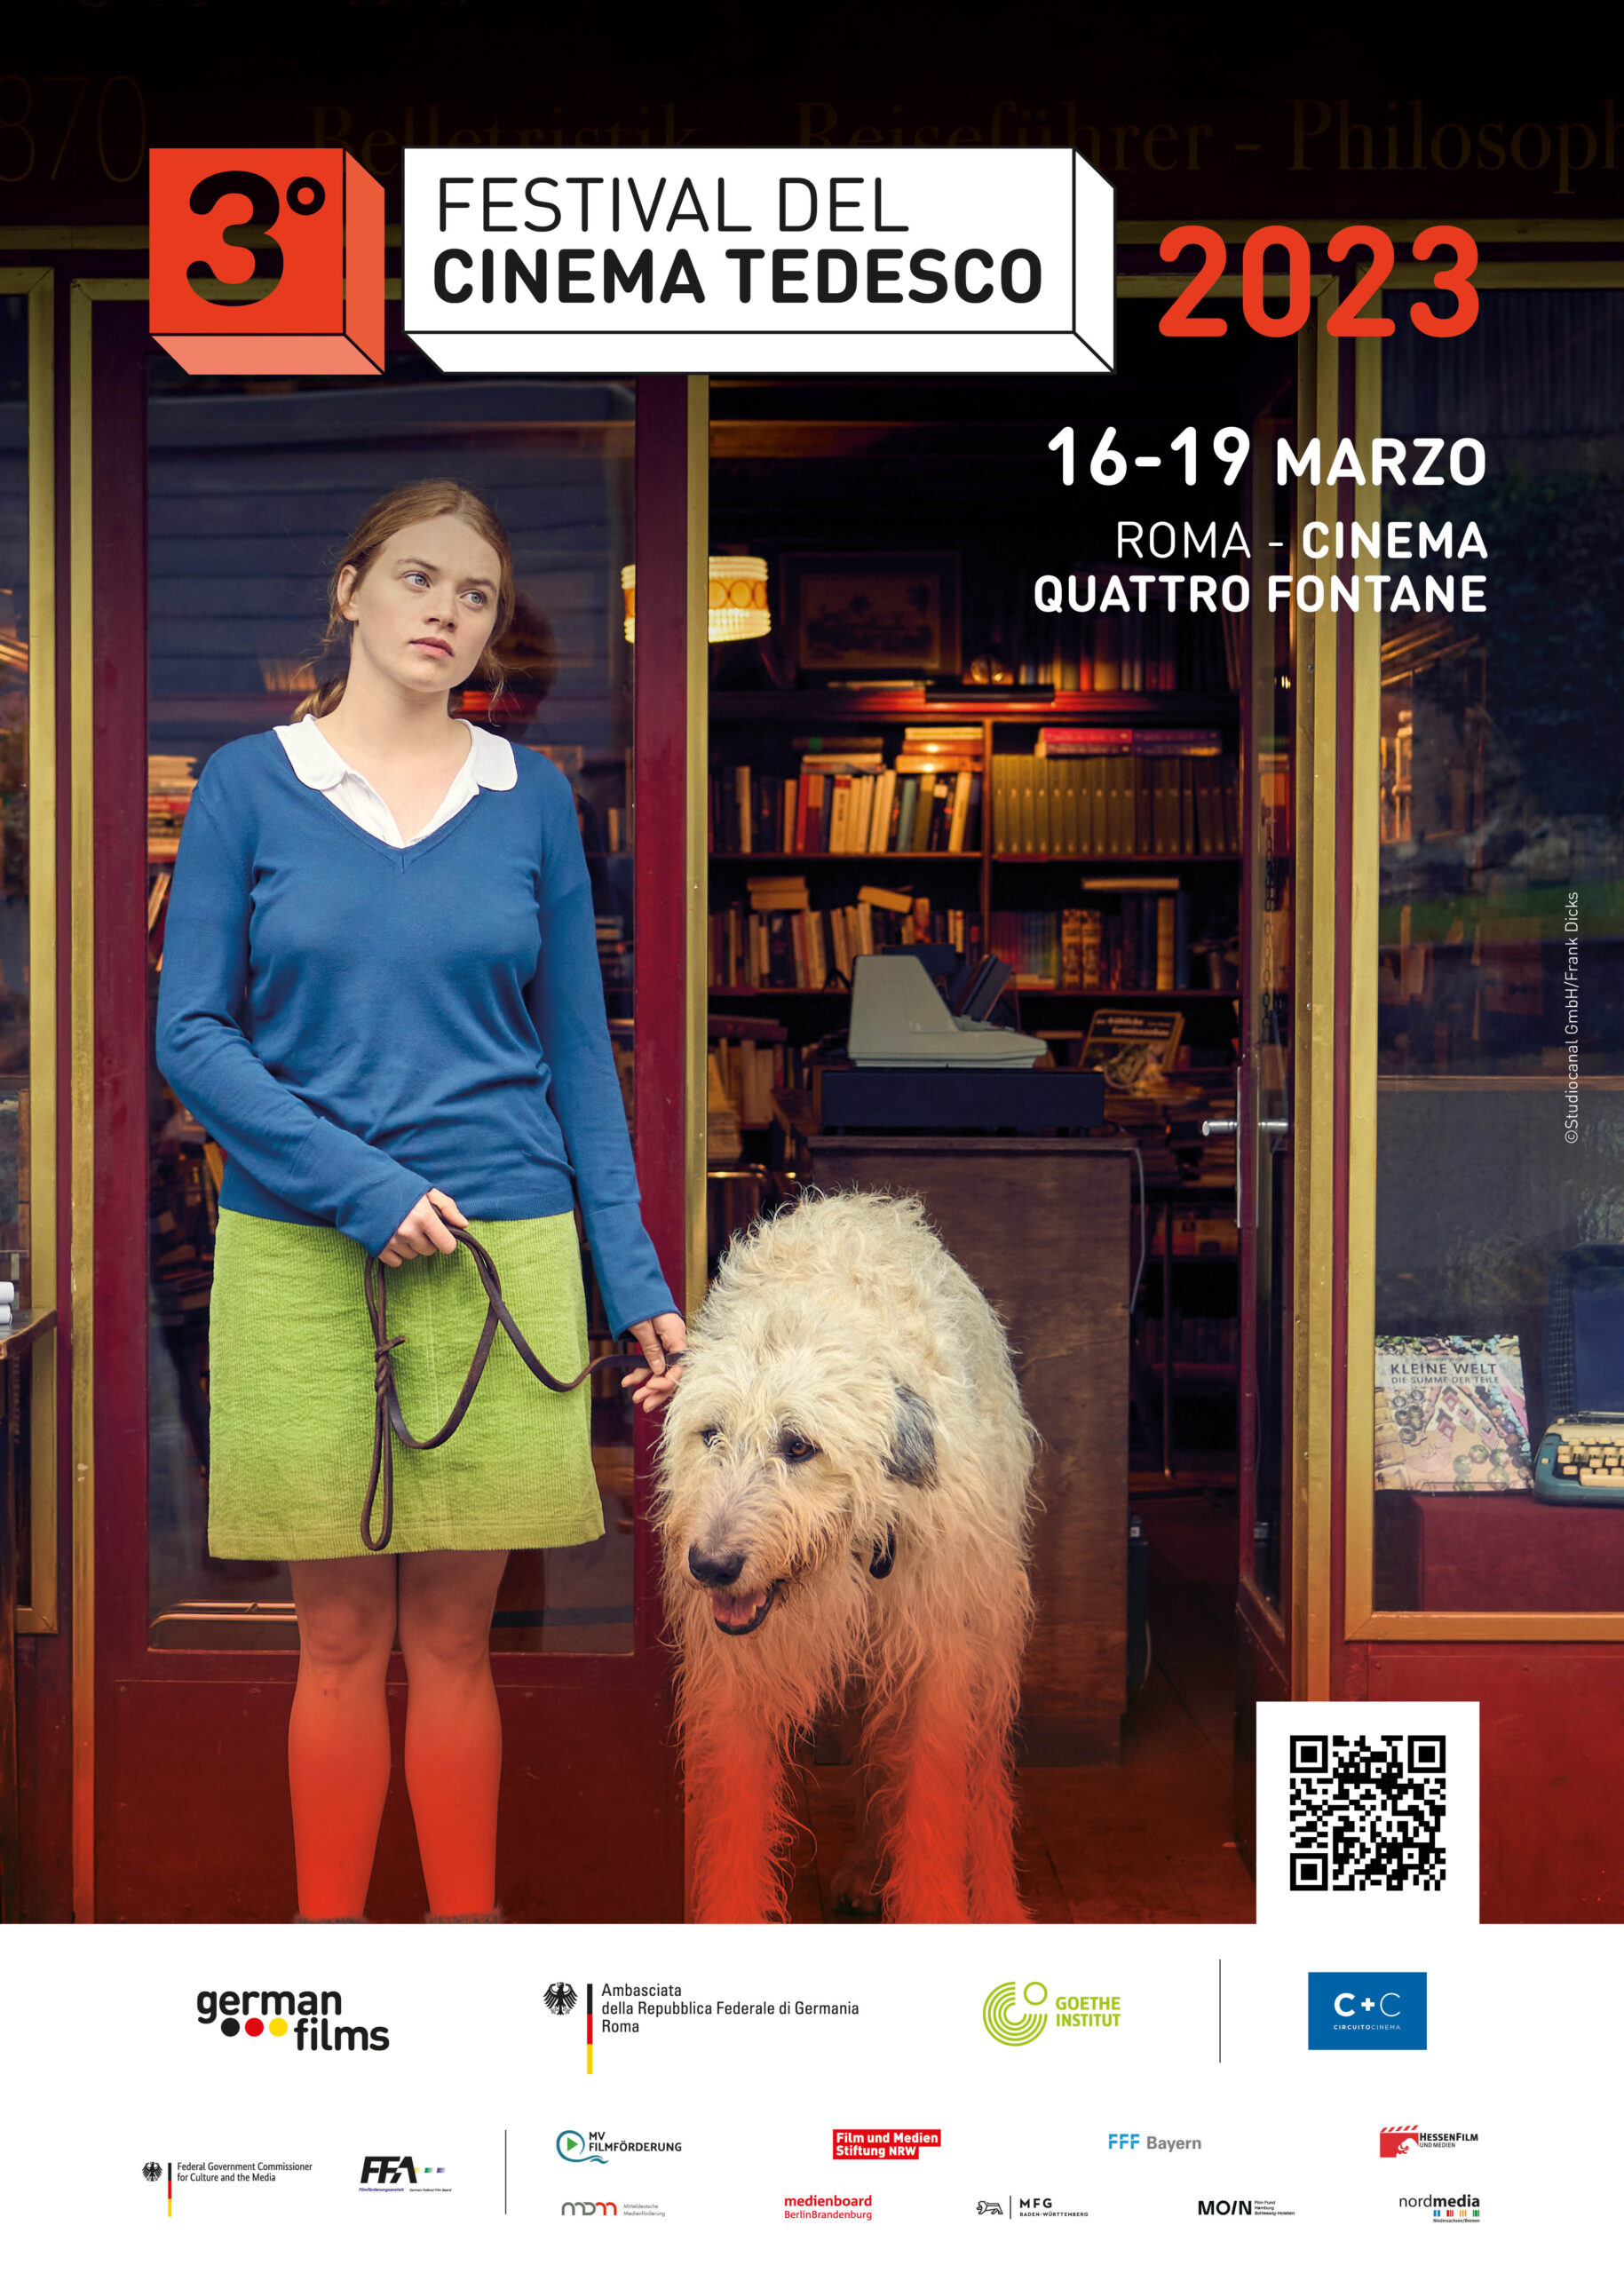 Festival del Cinema Tedesco: a Roma dal 16 al 19/03 la Terza Edizione